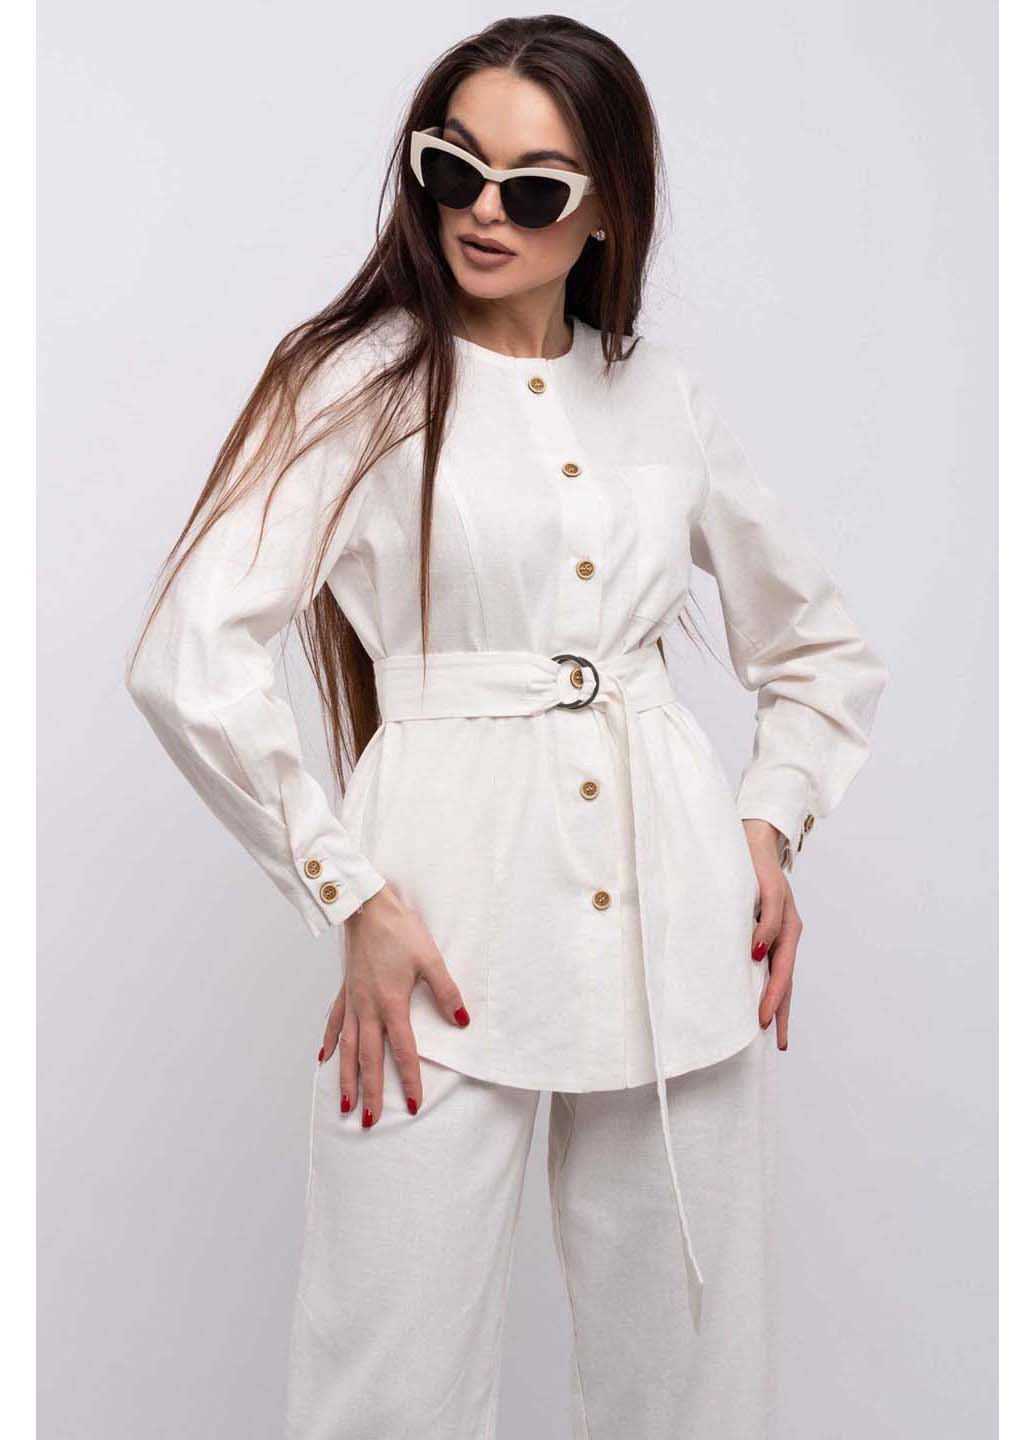 Молочная демисезонная блуза Ри Мари